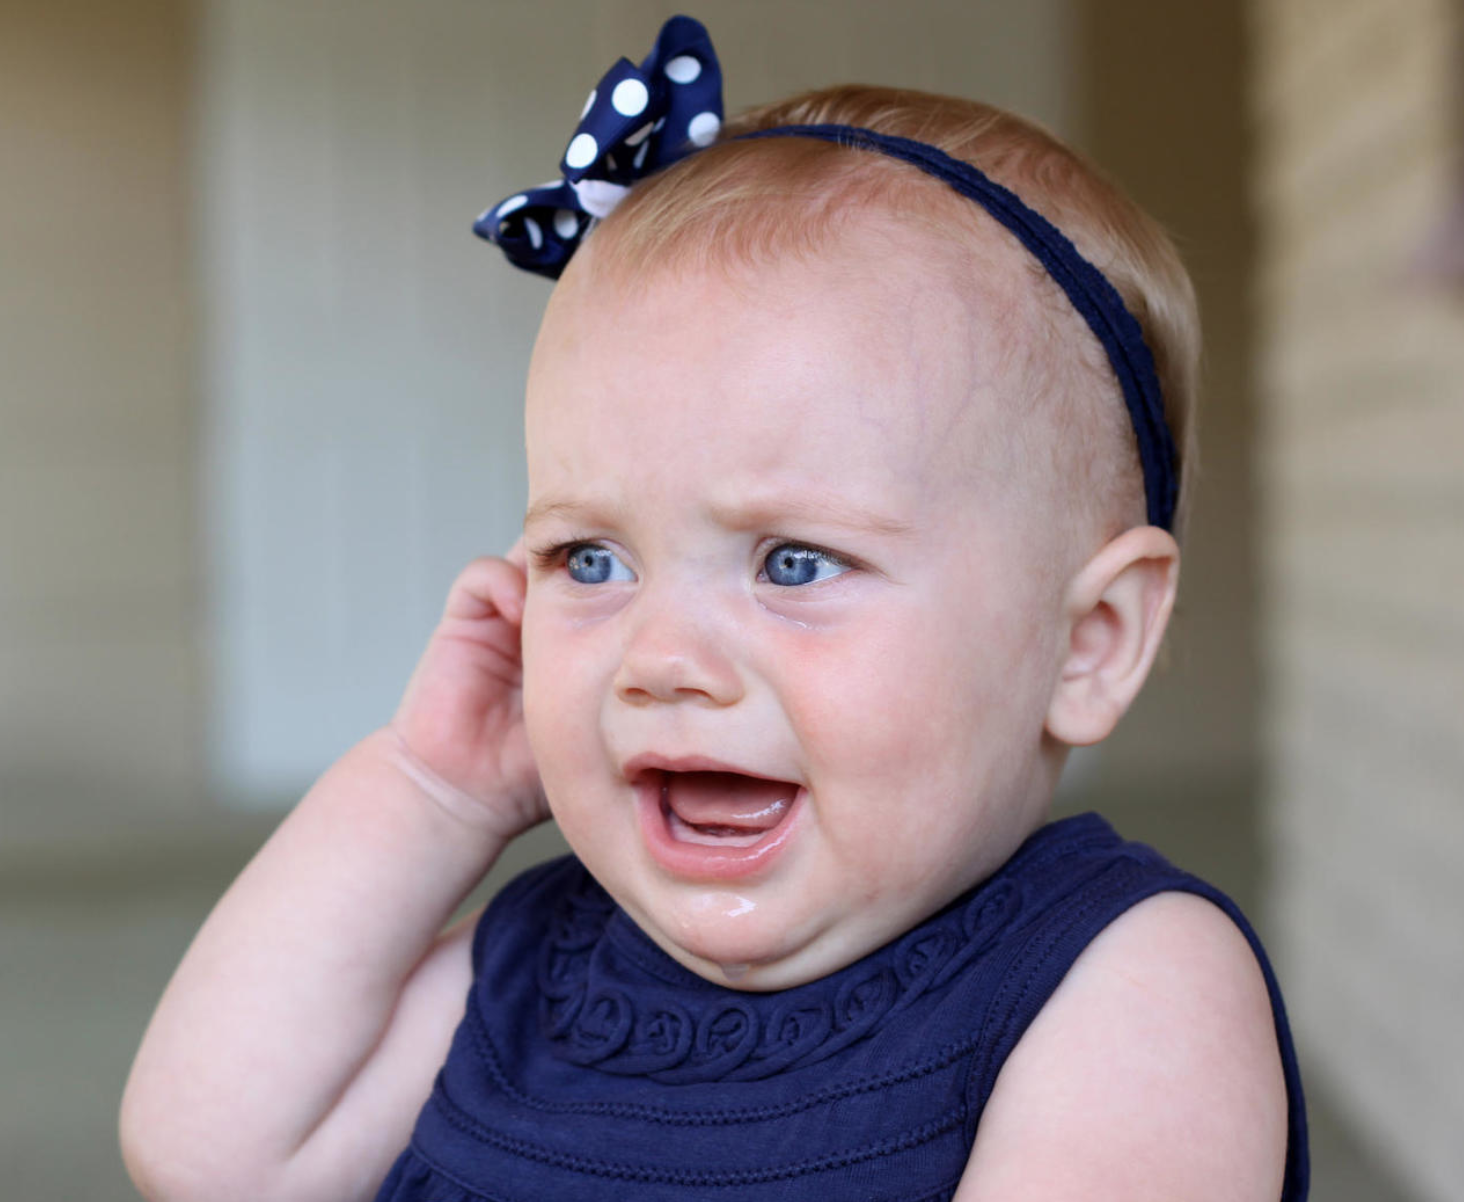 Síntomas de infección de oído en bebés y niños pequeños